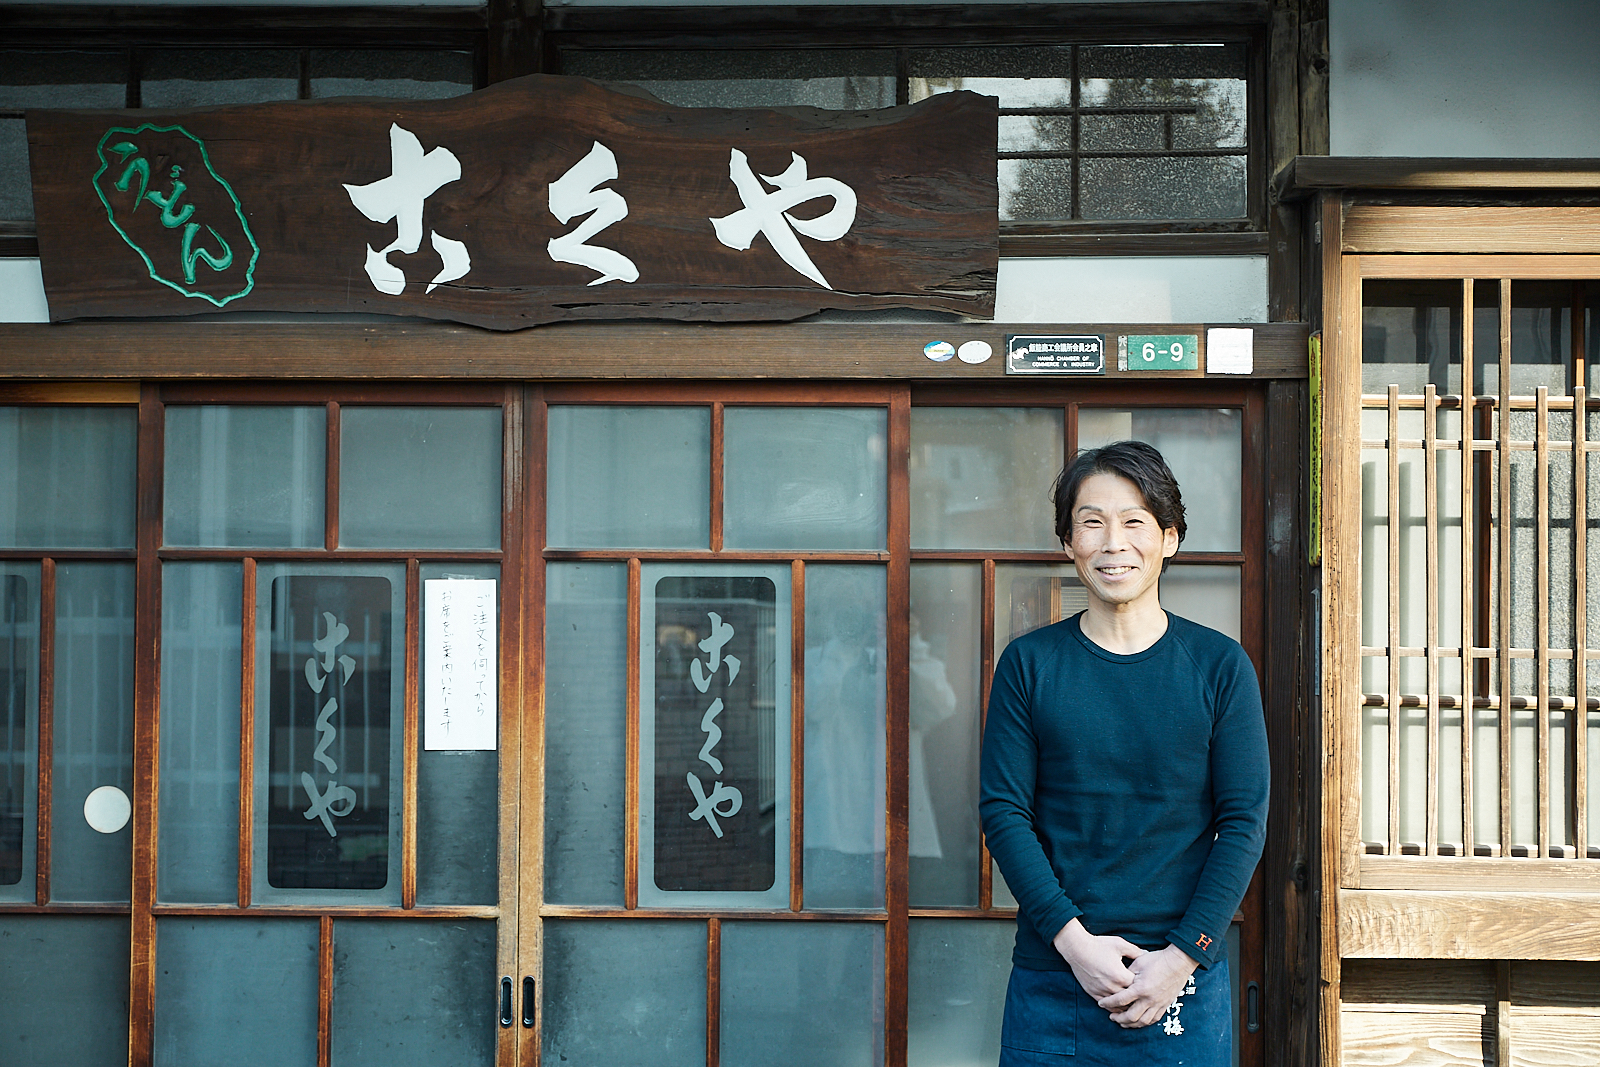 【Hanako w/ Seibu】江戸末期から飯能で営業するうどん店〈こくや〉。老舗が見てきた街の変化と暮らしの魅力。